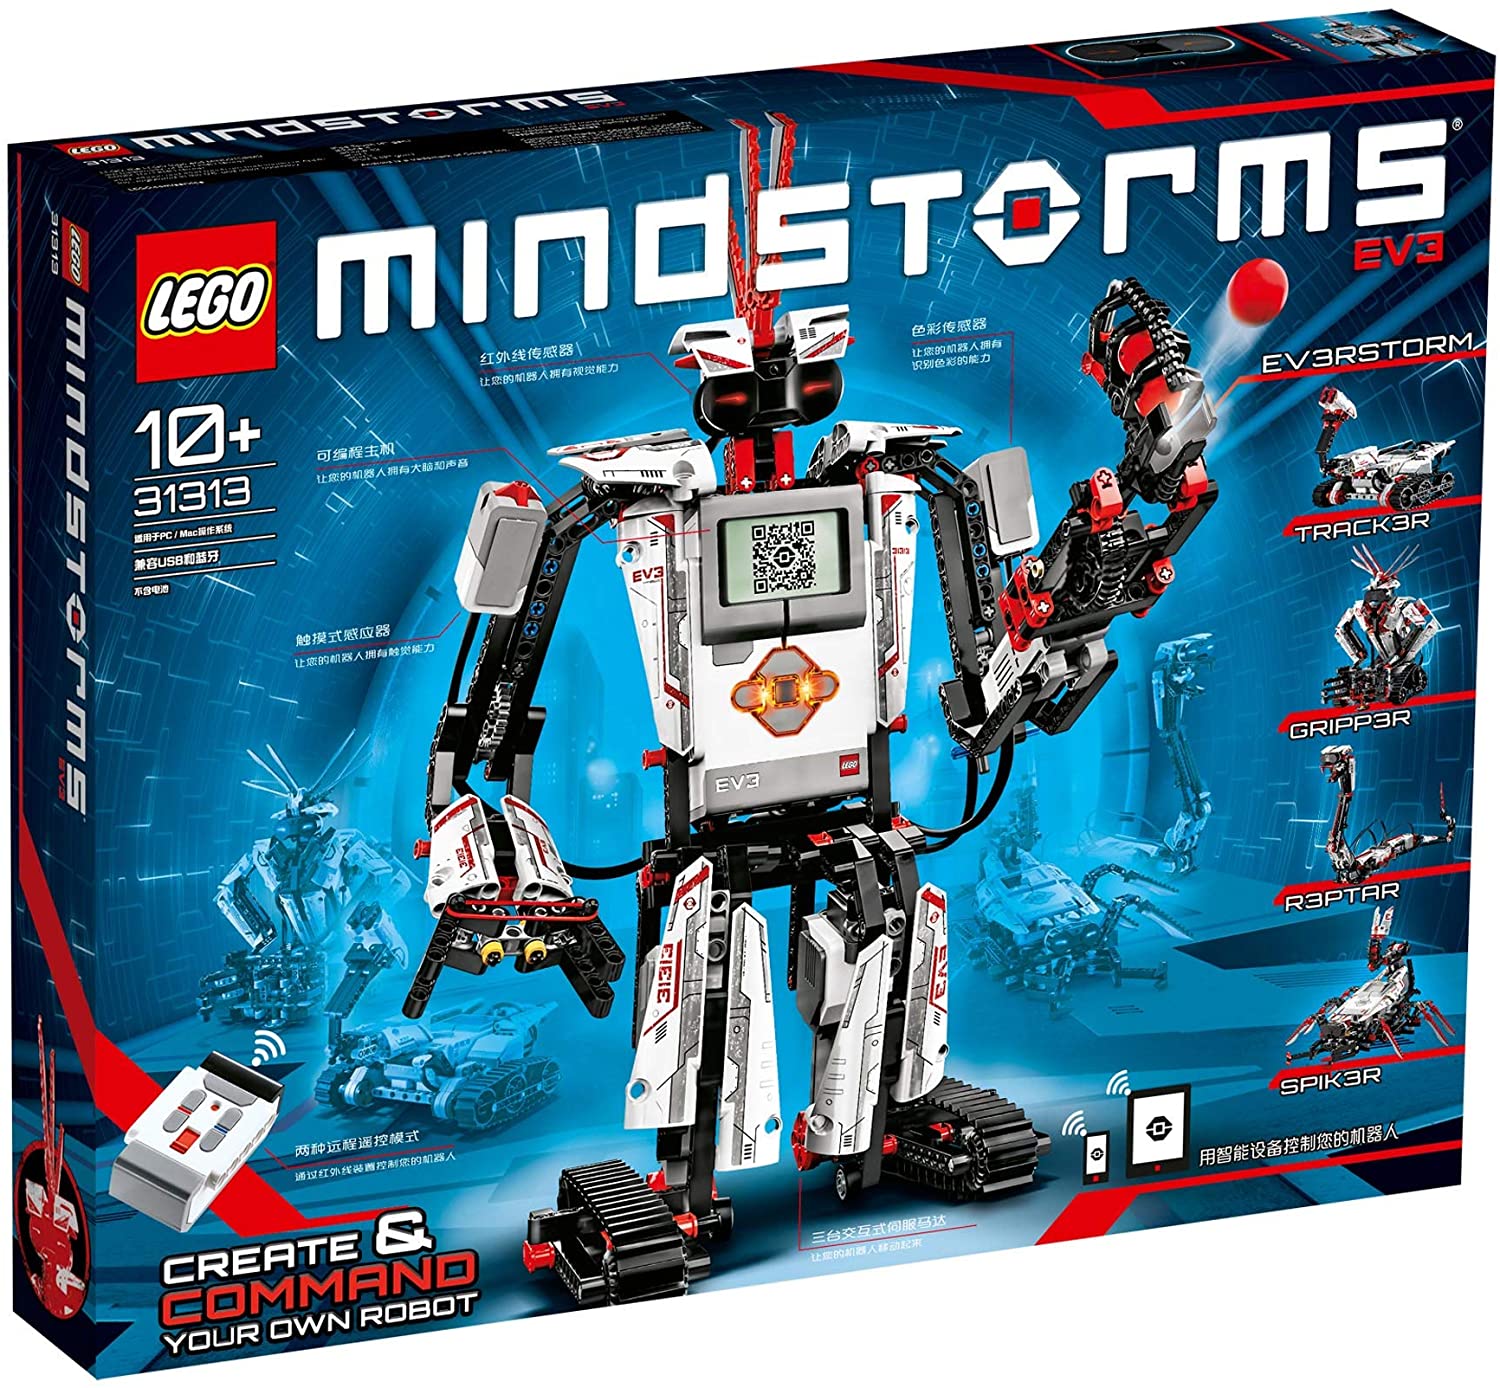 Lego Mindstorms Ev3 31313 - Digital Mobile Gadget